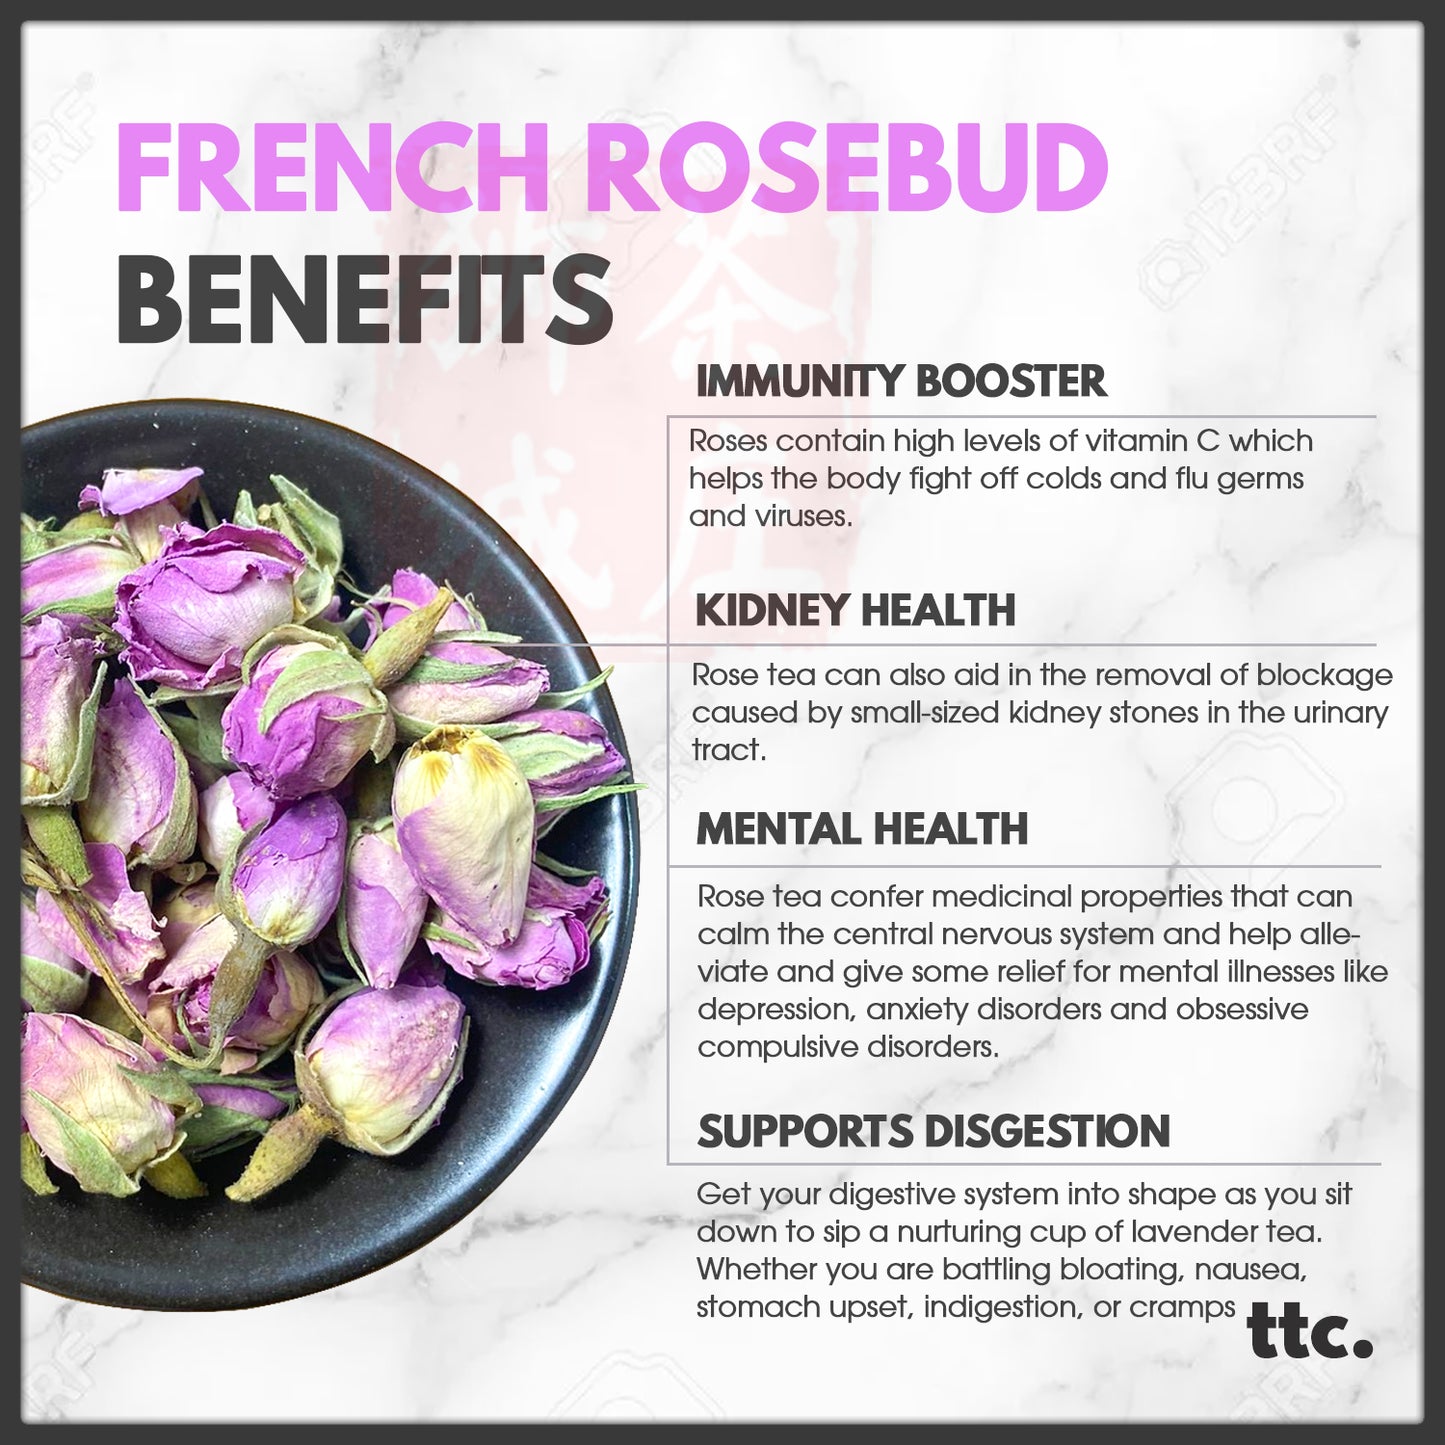 French Rosebud Flower Tea (80g)